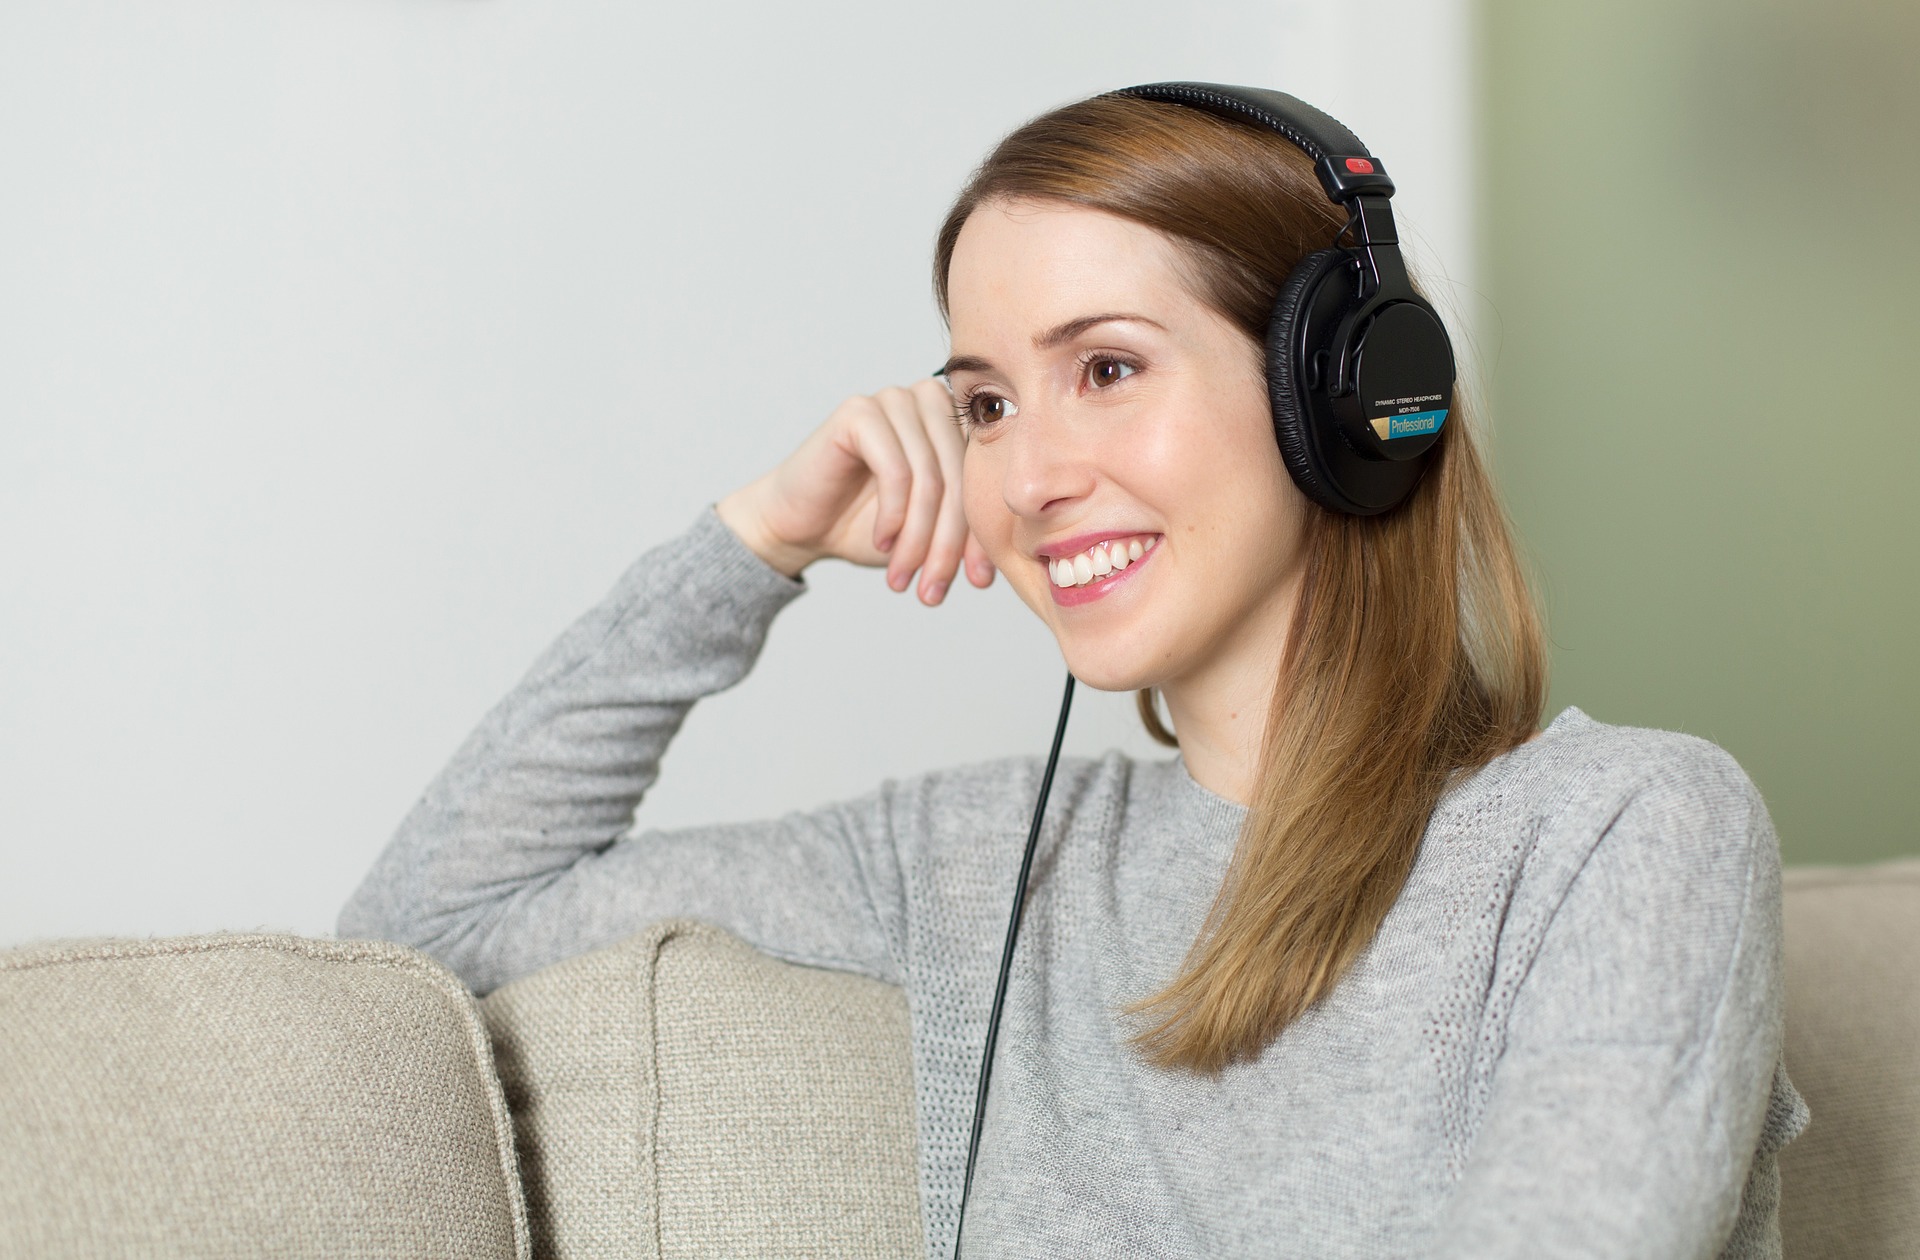 Ilustrasi: Wanita sedang mendengarkan musik. (Pixabay)